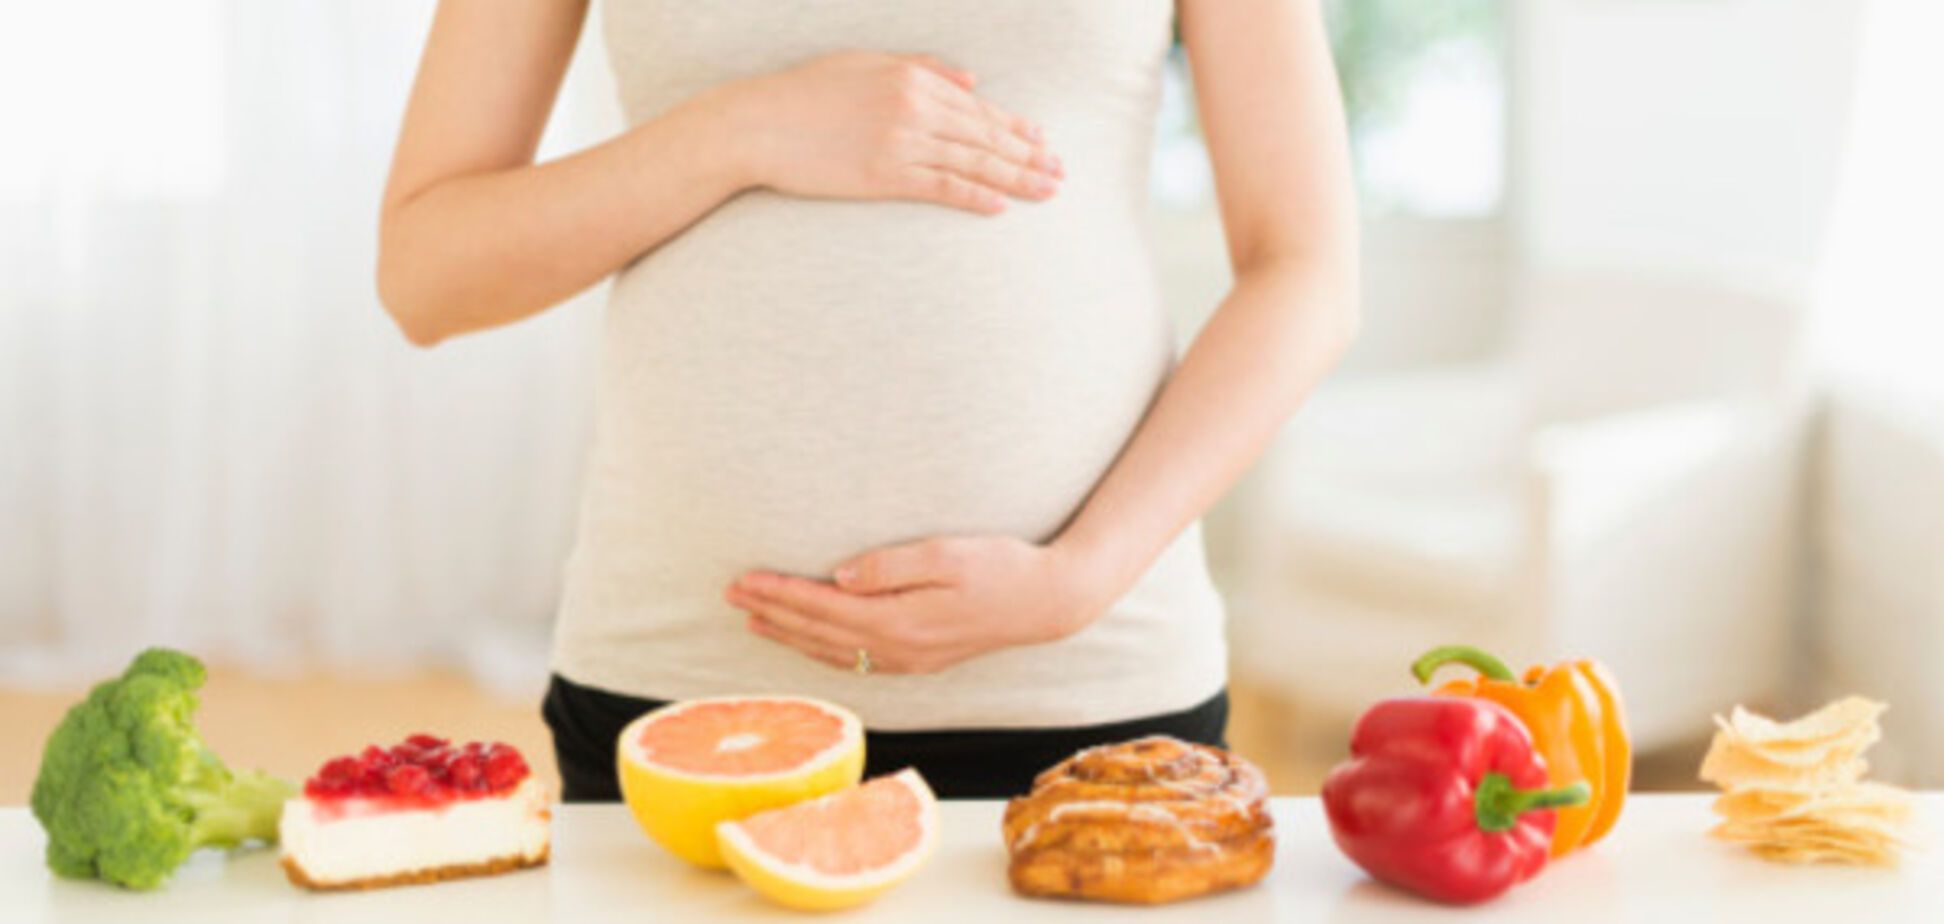 Ученые доказали связь между развитием ребенка и питанием матери во время беременности